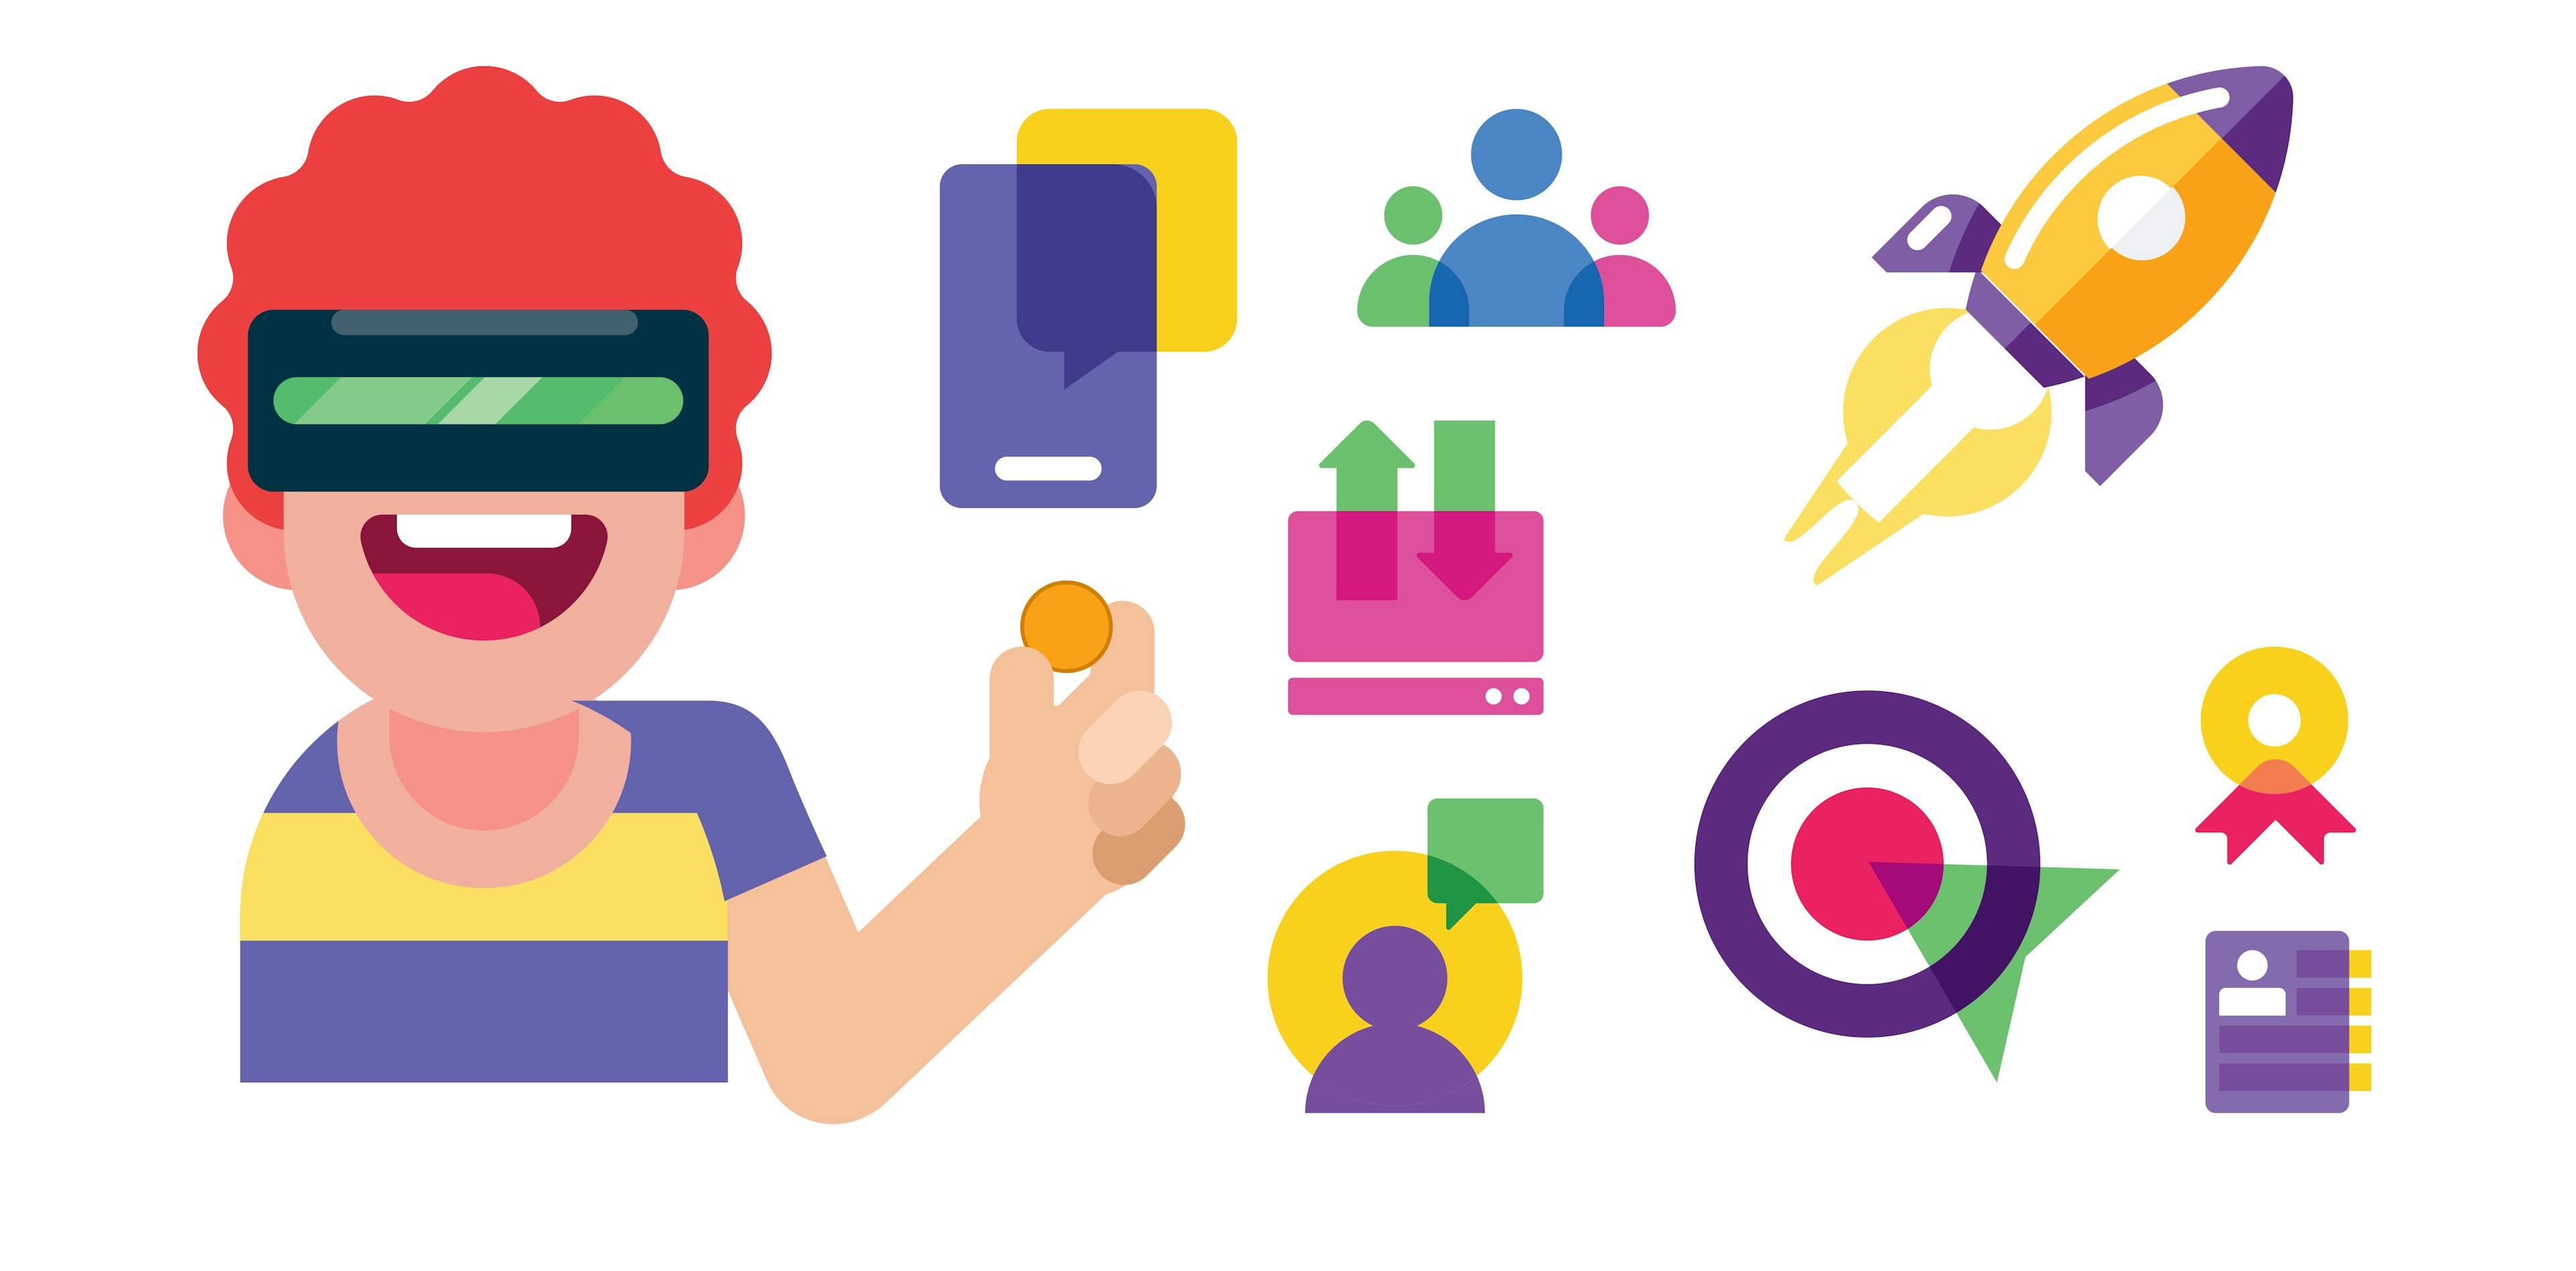 Kontrolle und Flexibilität Illustration - Founder mit VR Brille und  einem Penny in der Hand und Icons: Targeting, Threads. Users, Certificates, Targeting, und eine Rakete, die abhebt.